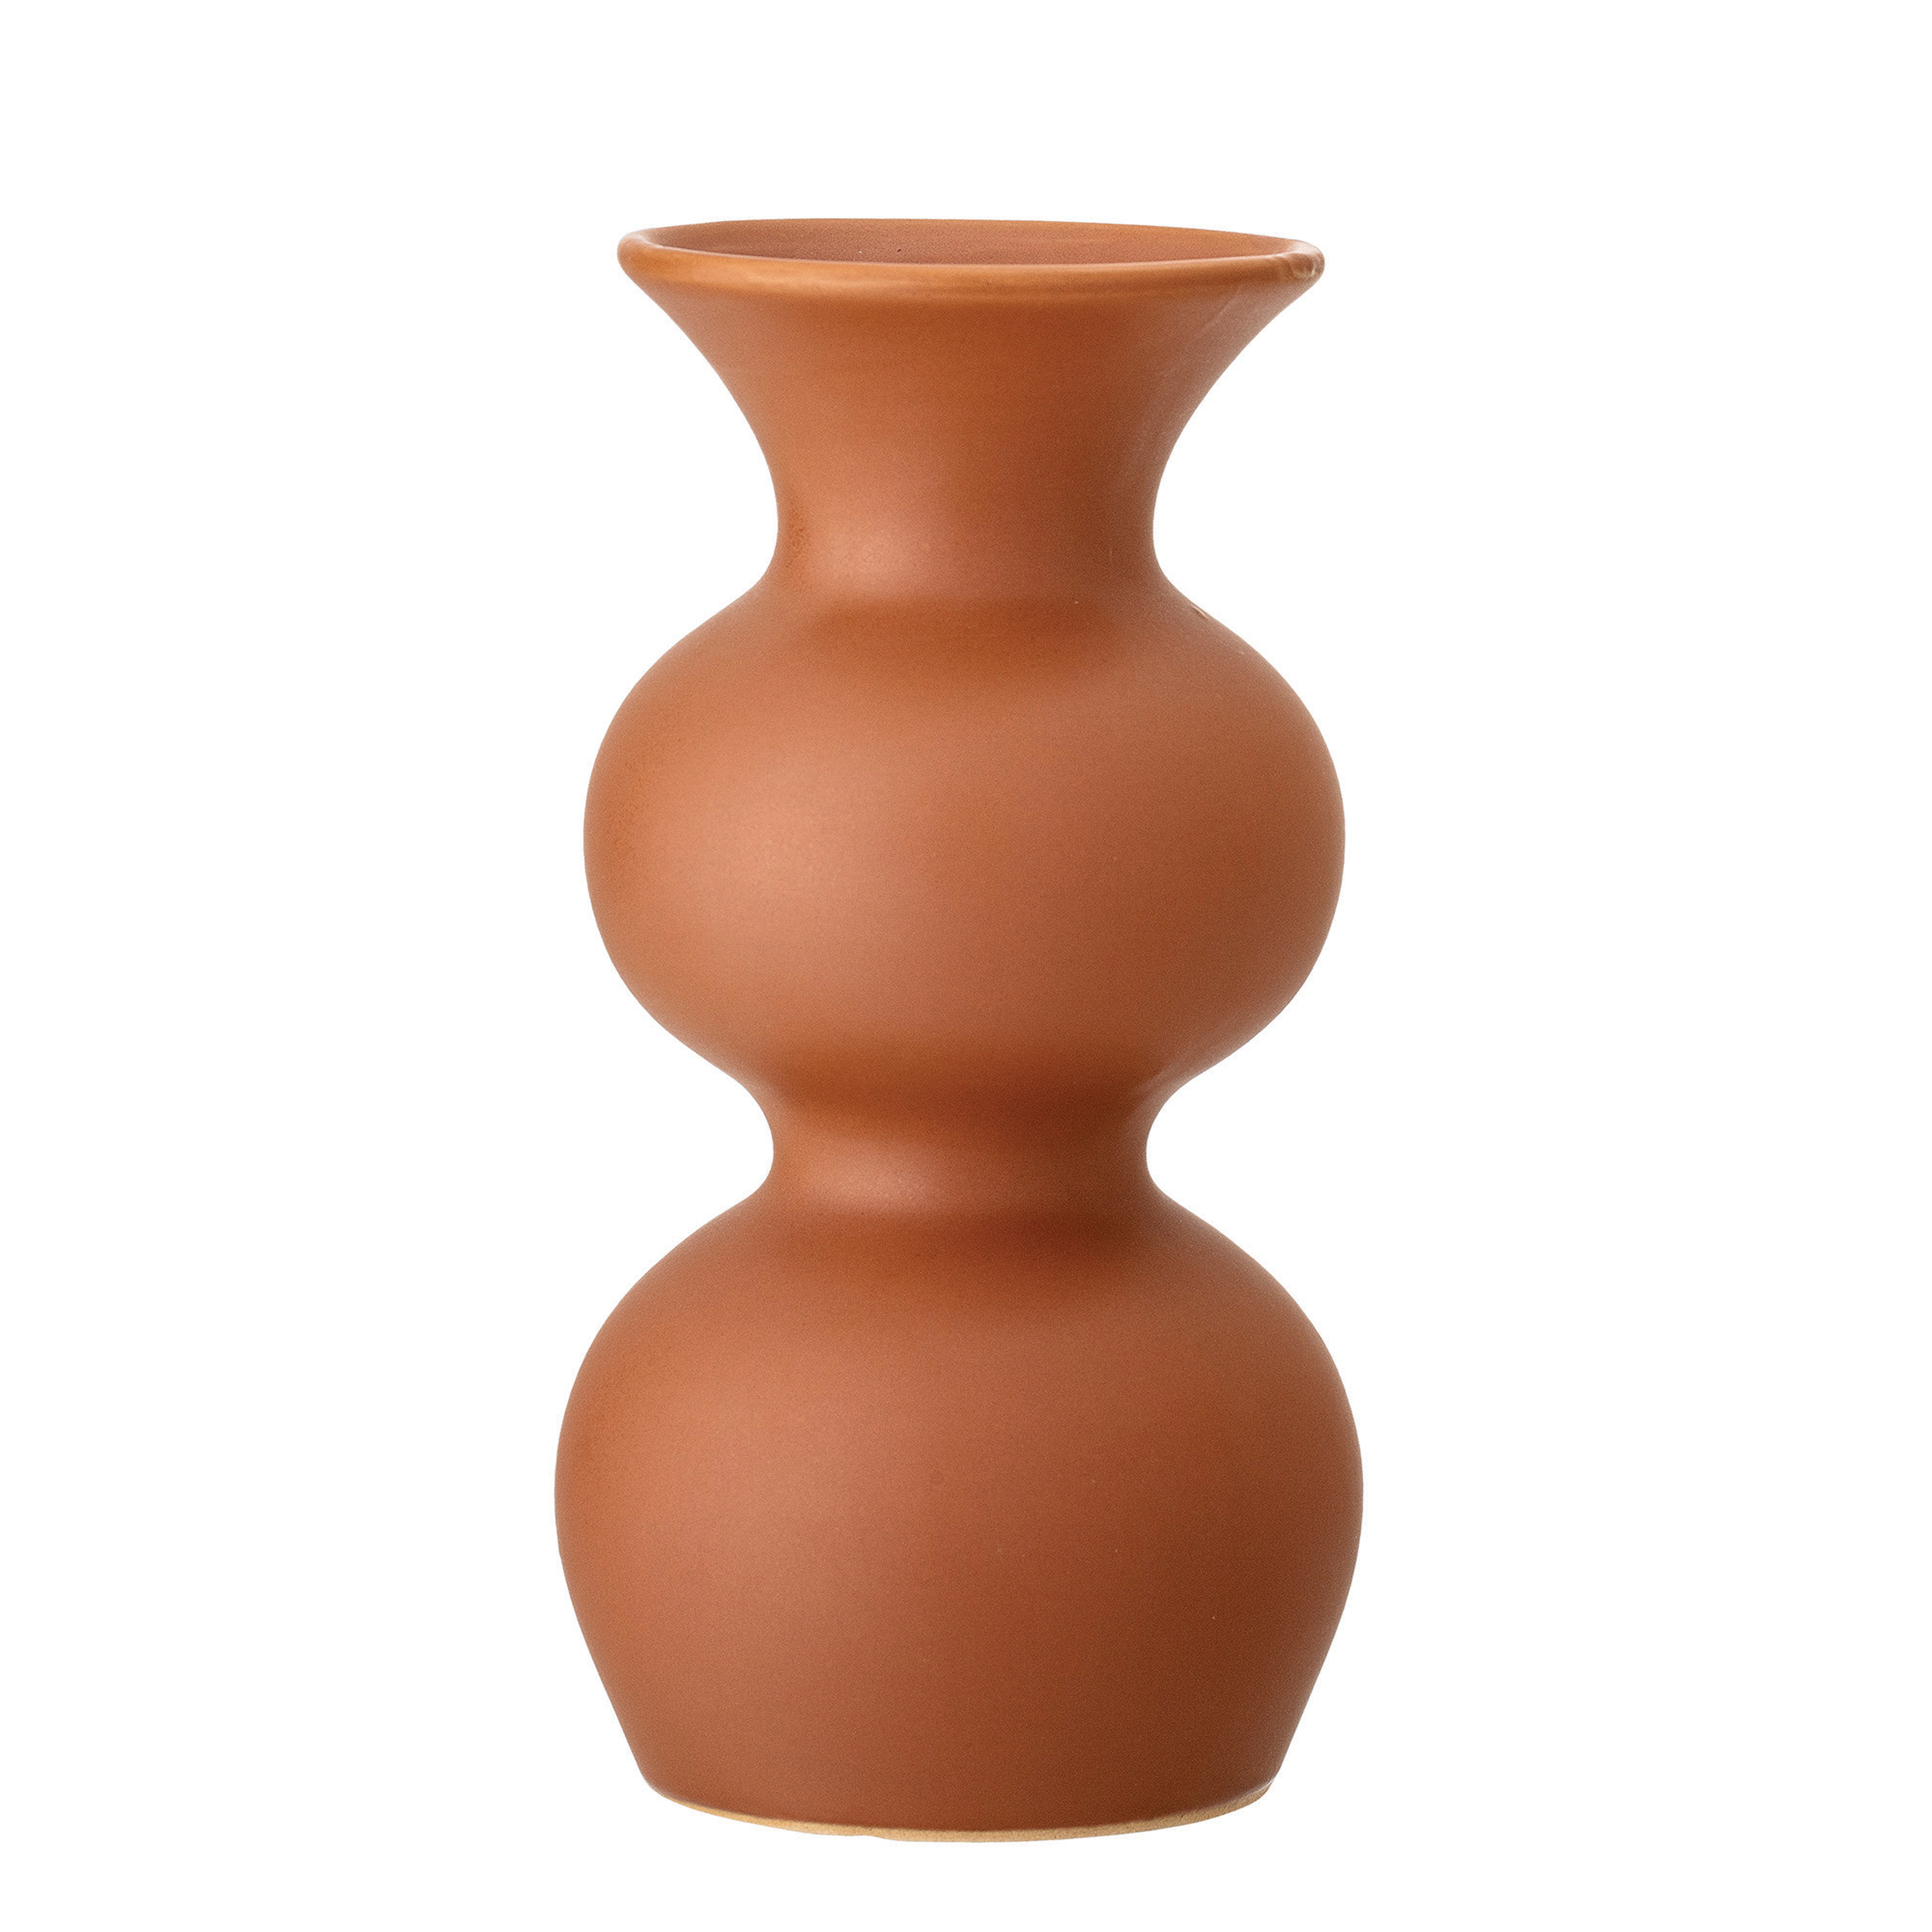 Shapely Sienna Stoneware Vase - Moss & Wilder